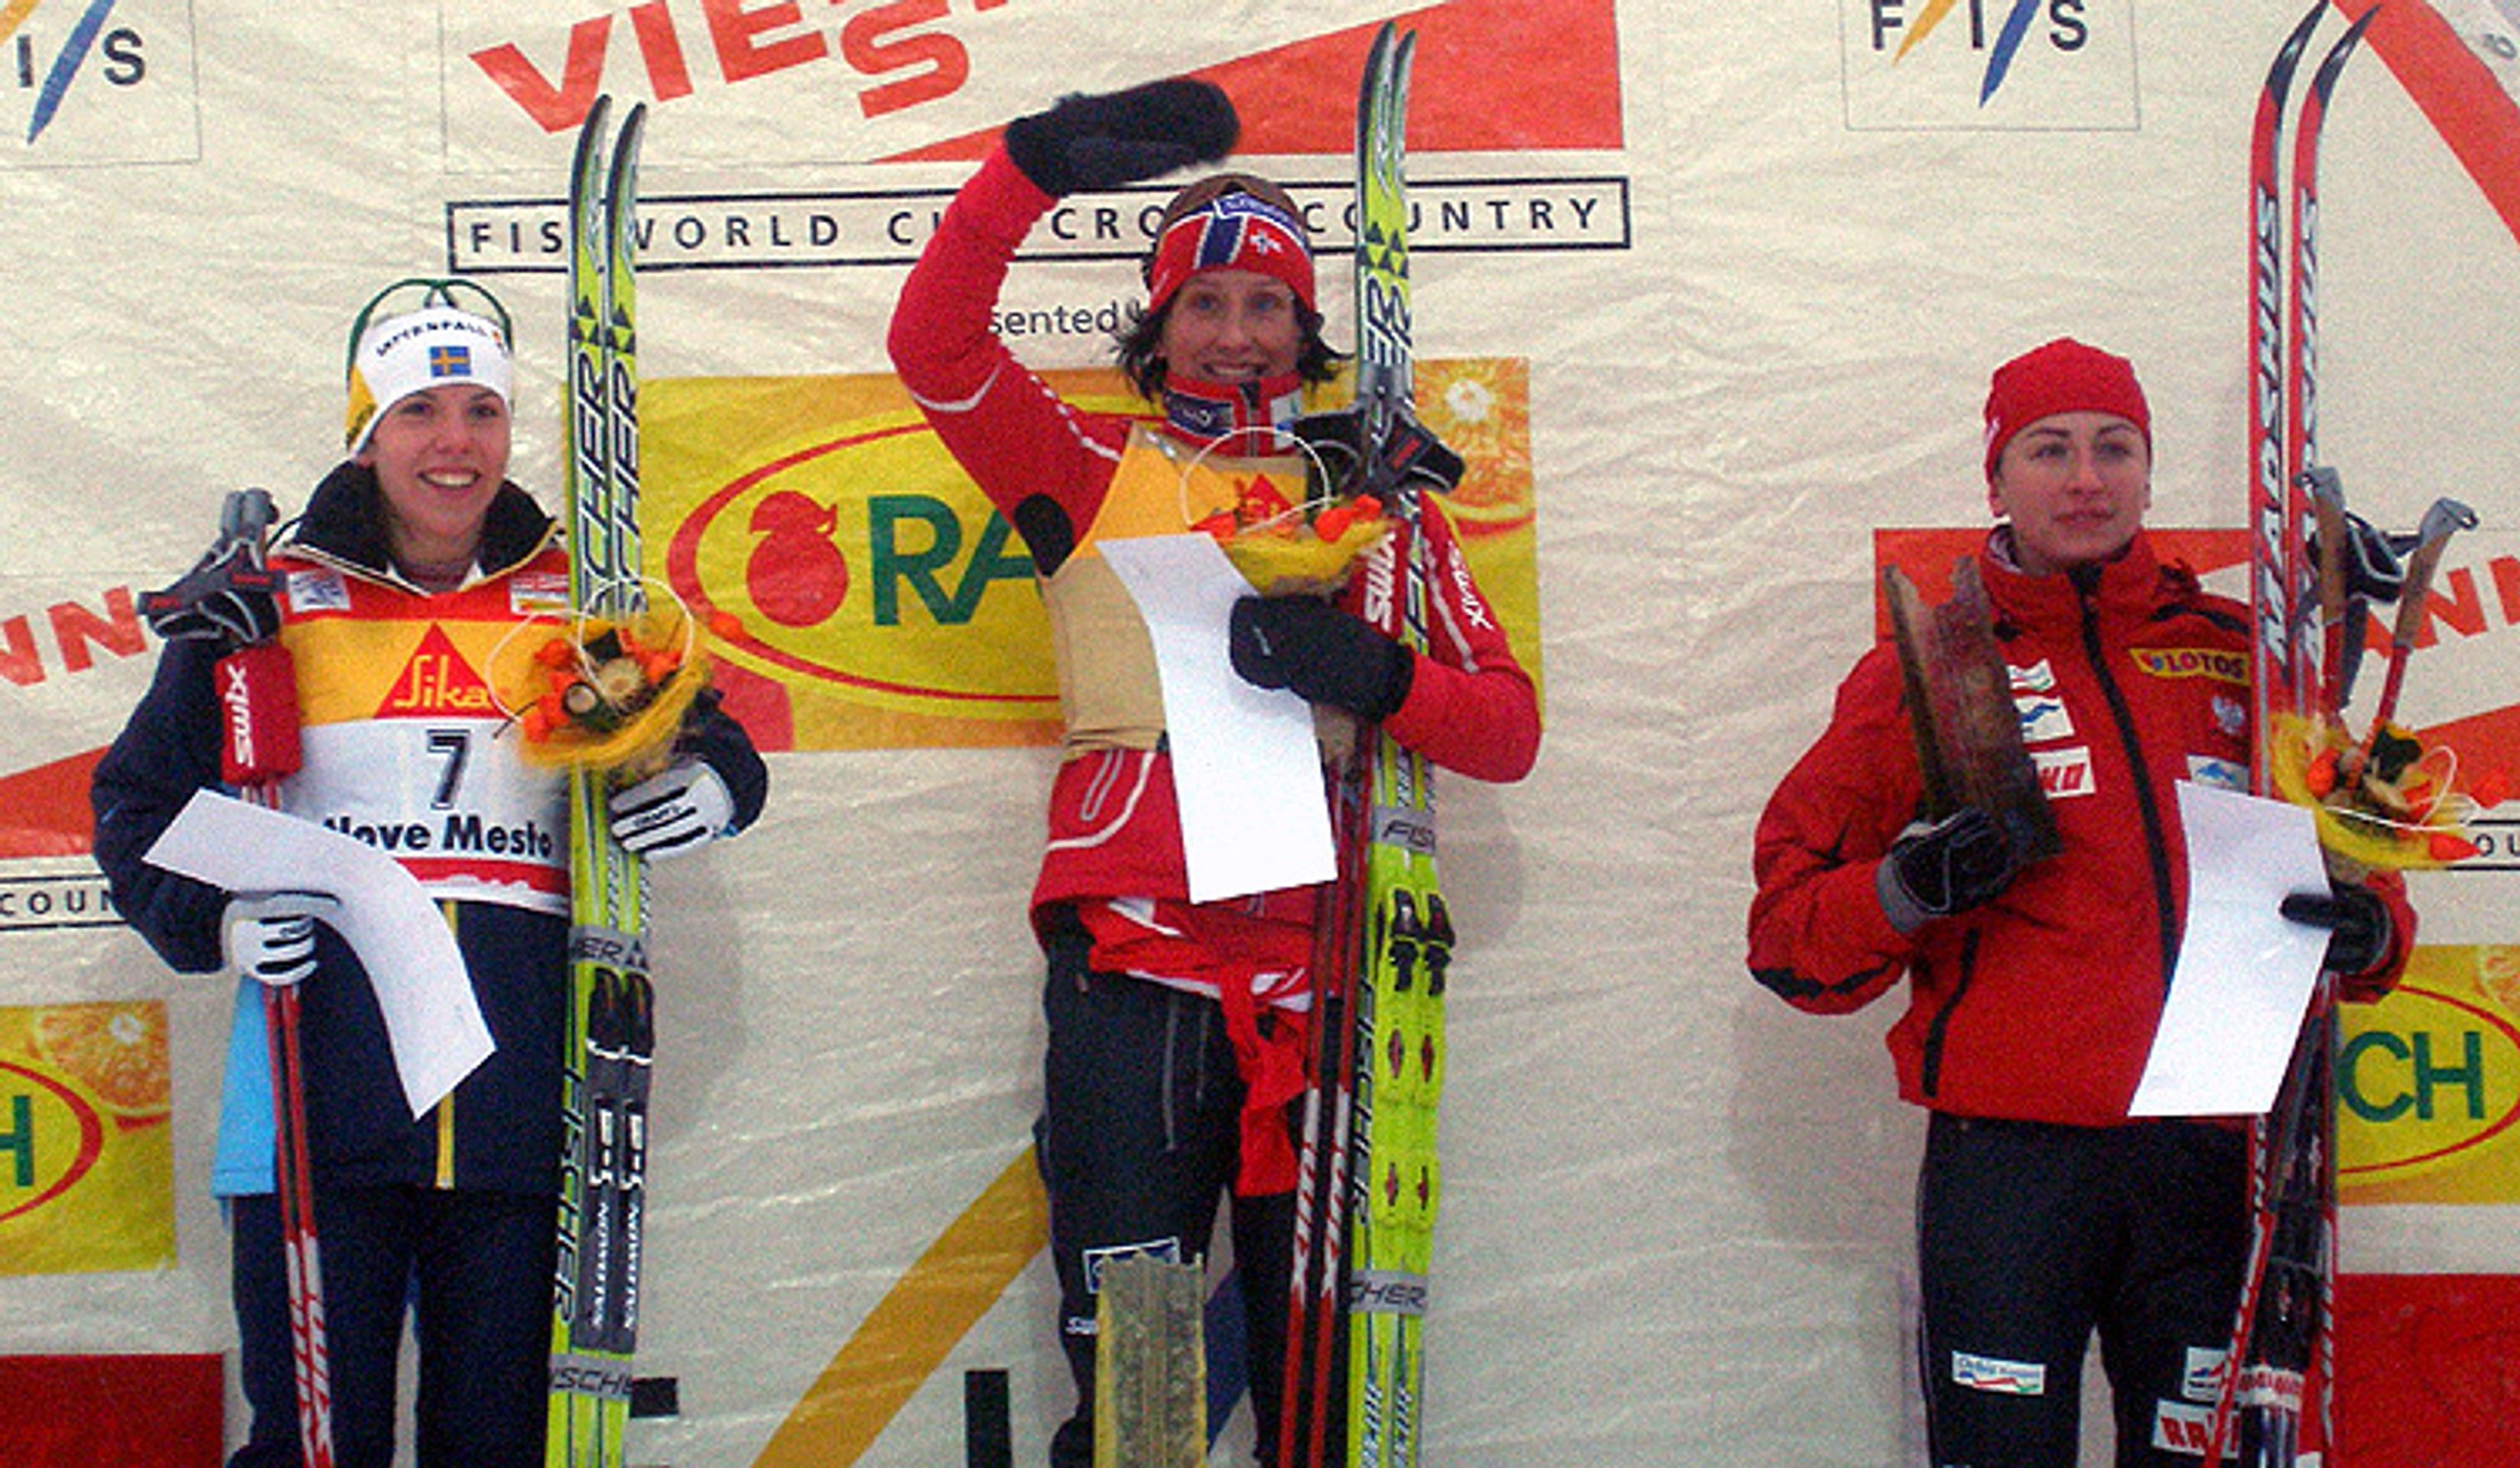 Tour de Ski v Novém Městě na Moravě - Bauer zvítězil v Novém Městě i dnes a vede Tour de Ski (7/12)